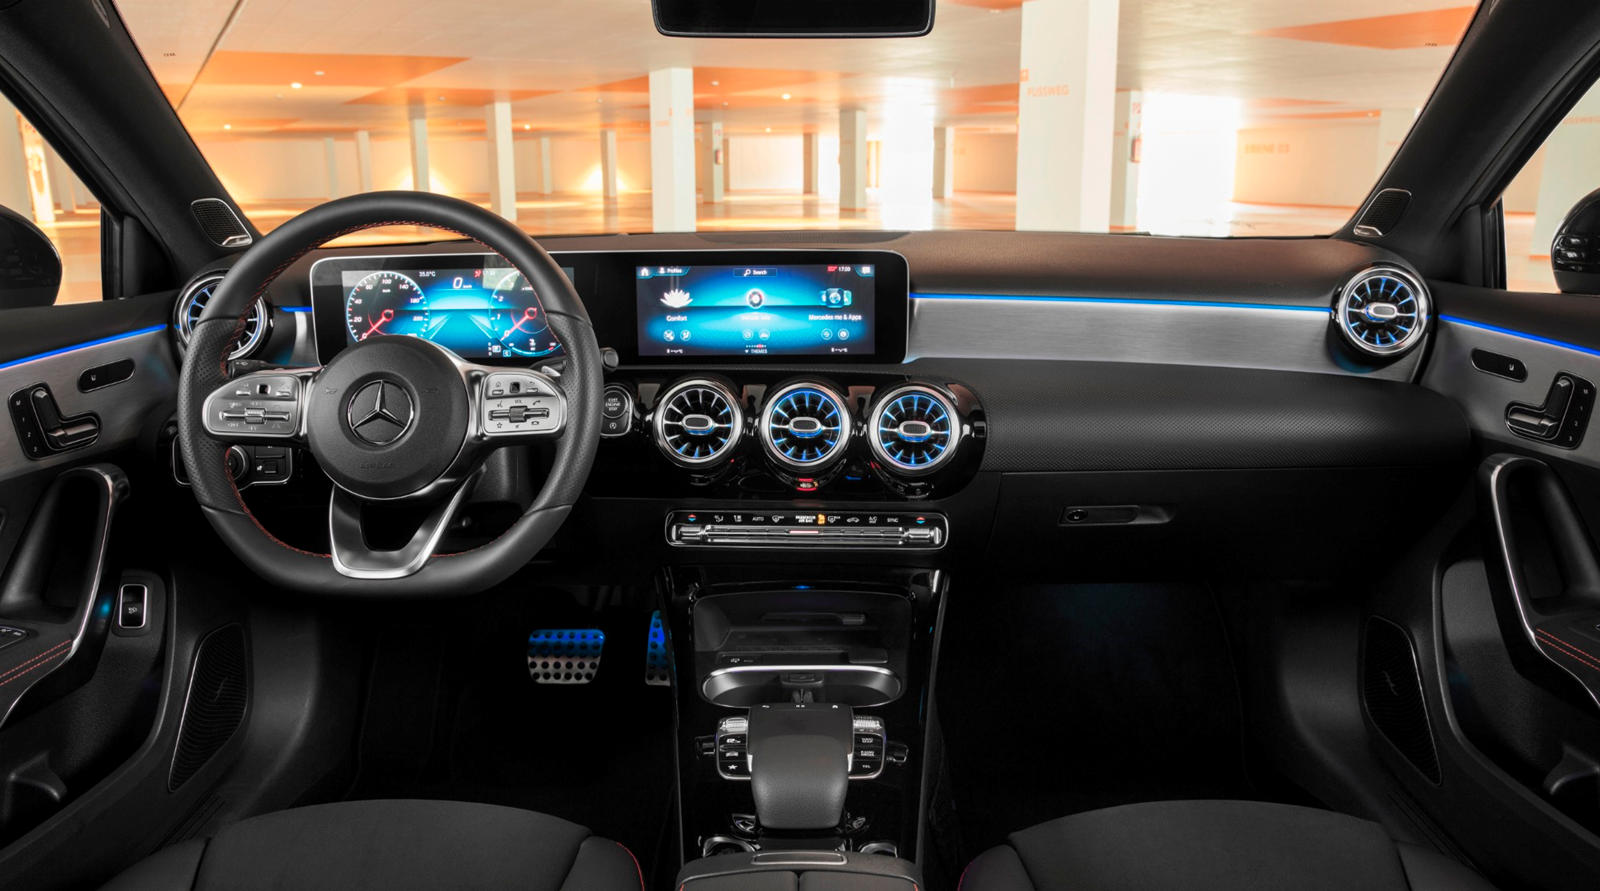 Mercedes-Benz A 250 interior - Cockpit